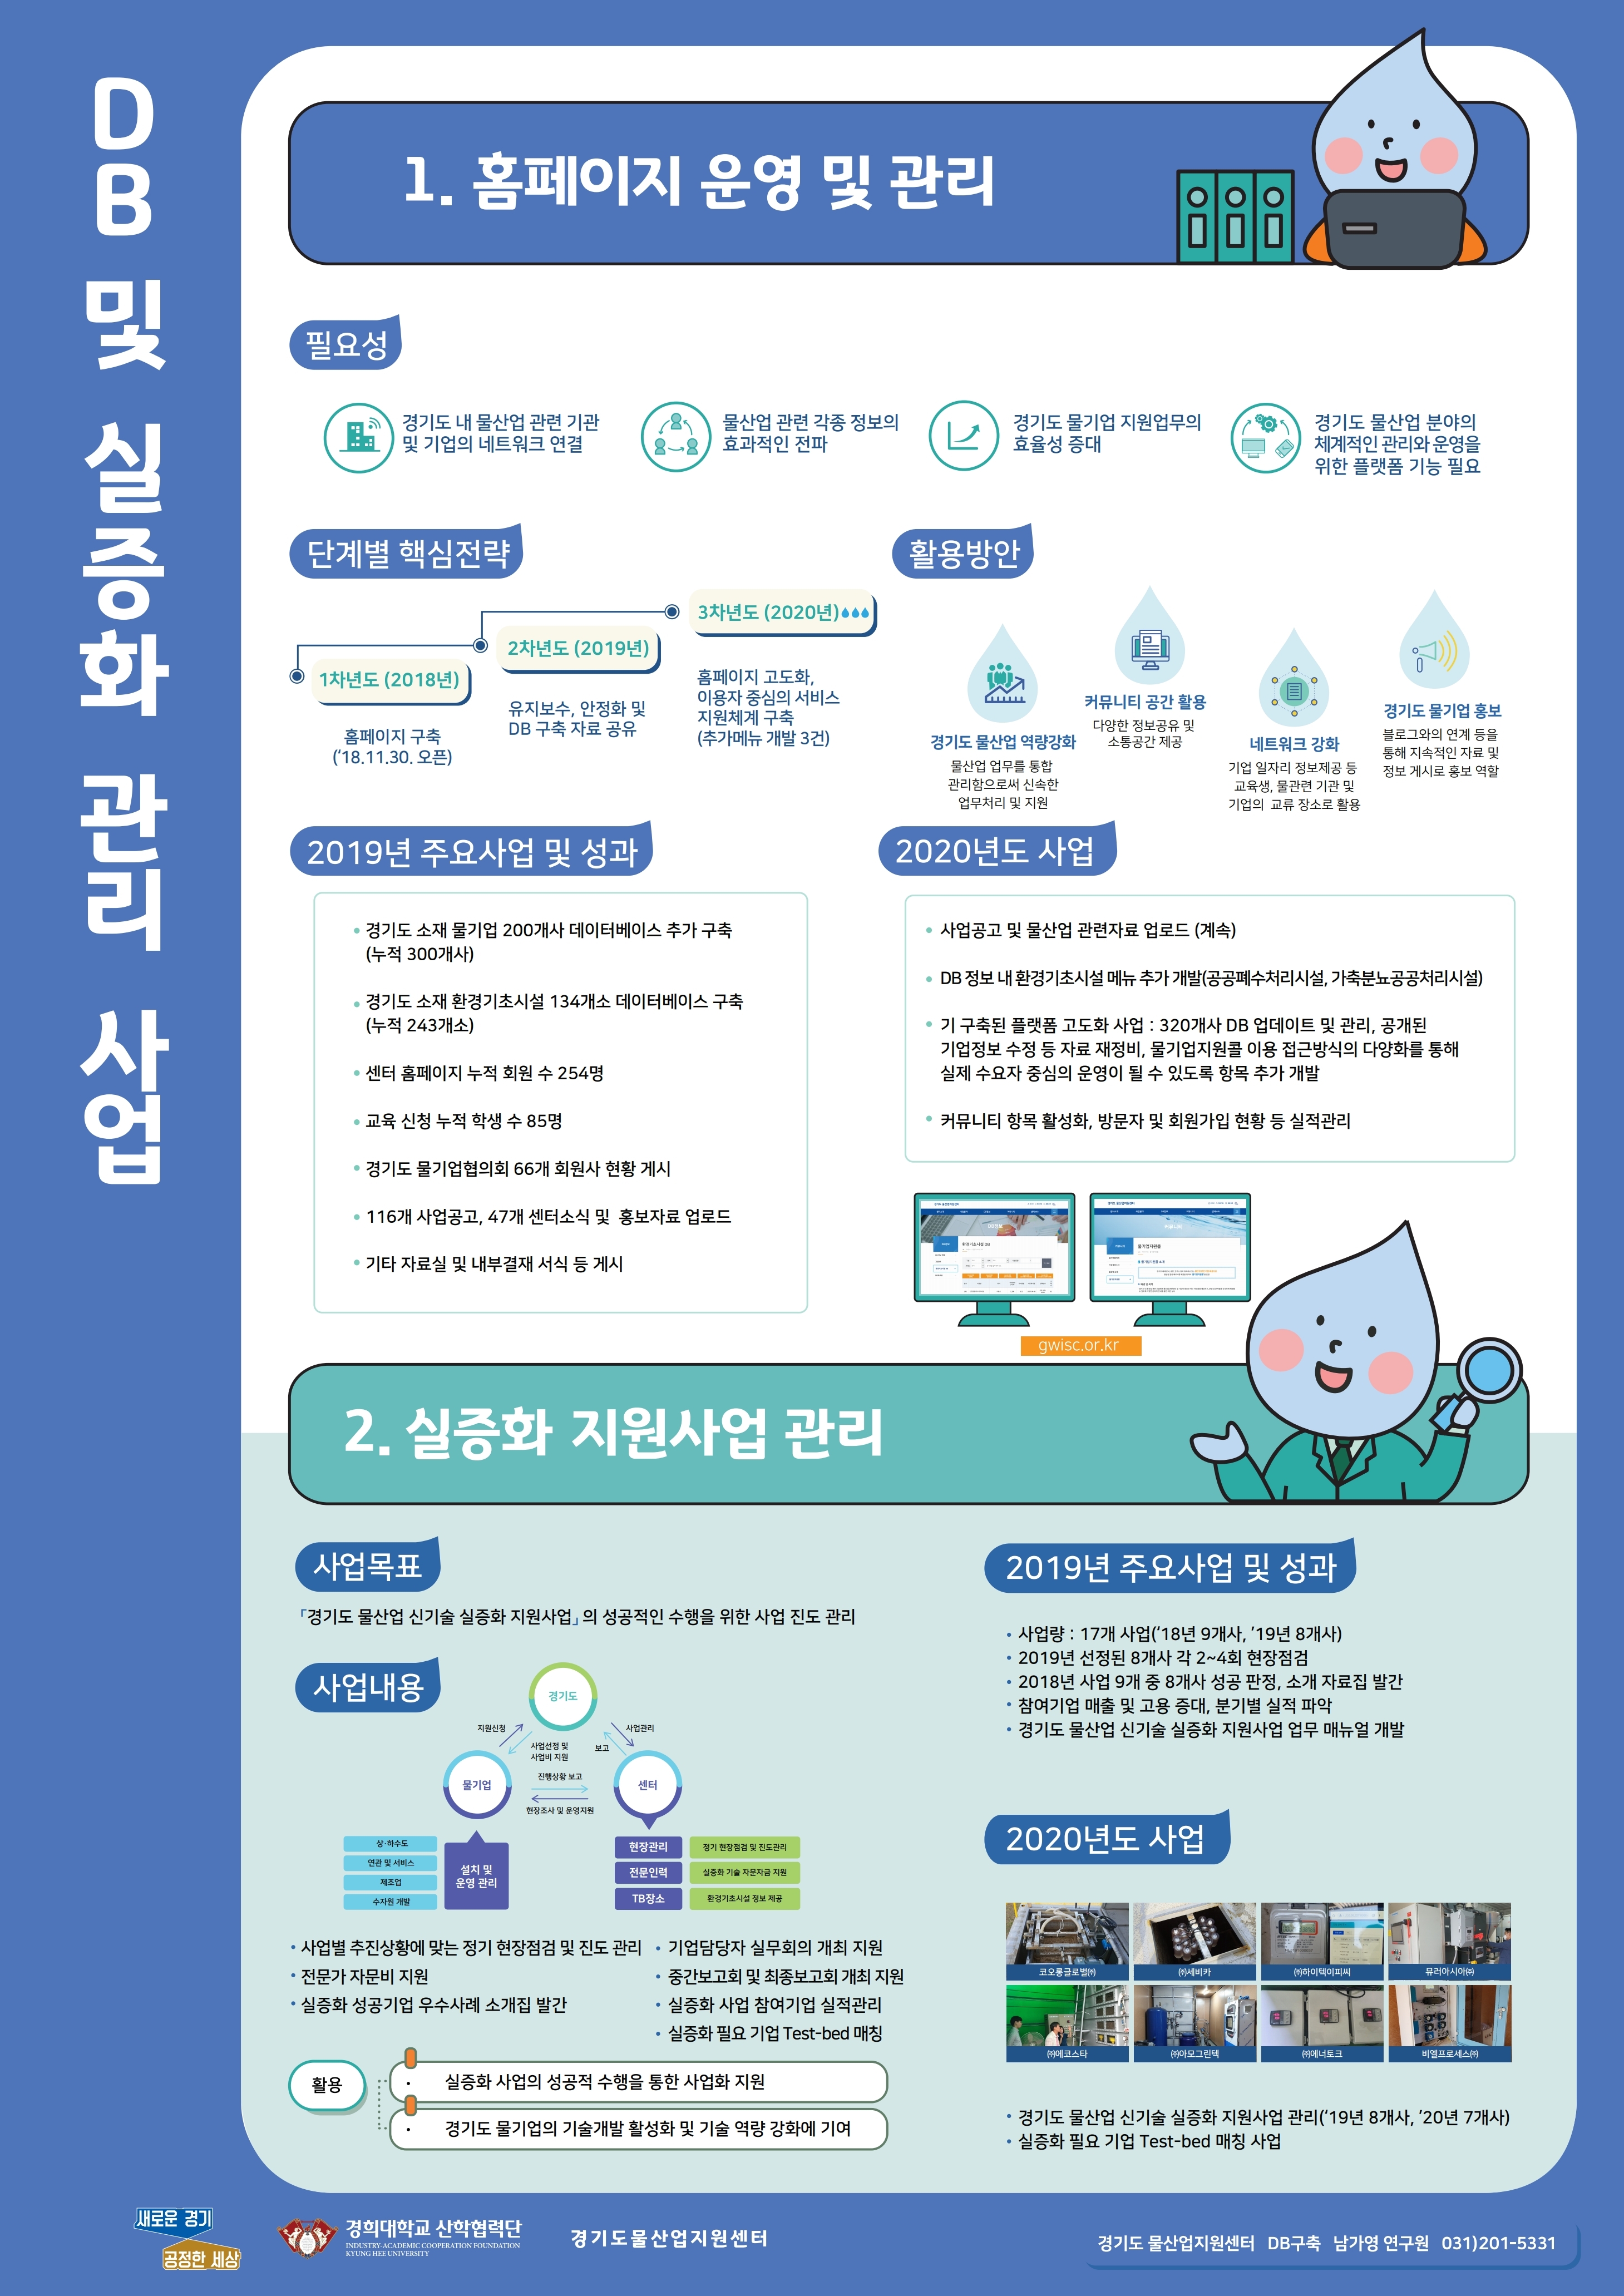 [경기도 물산업지원센터] DB 및 실증화 관리사업 소개 포스터